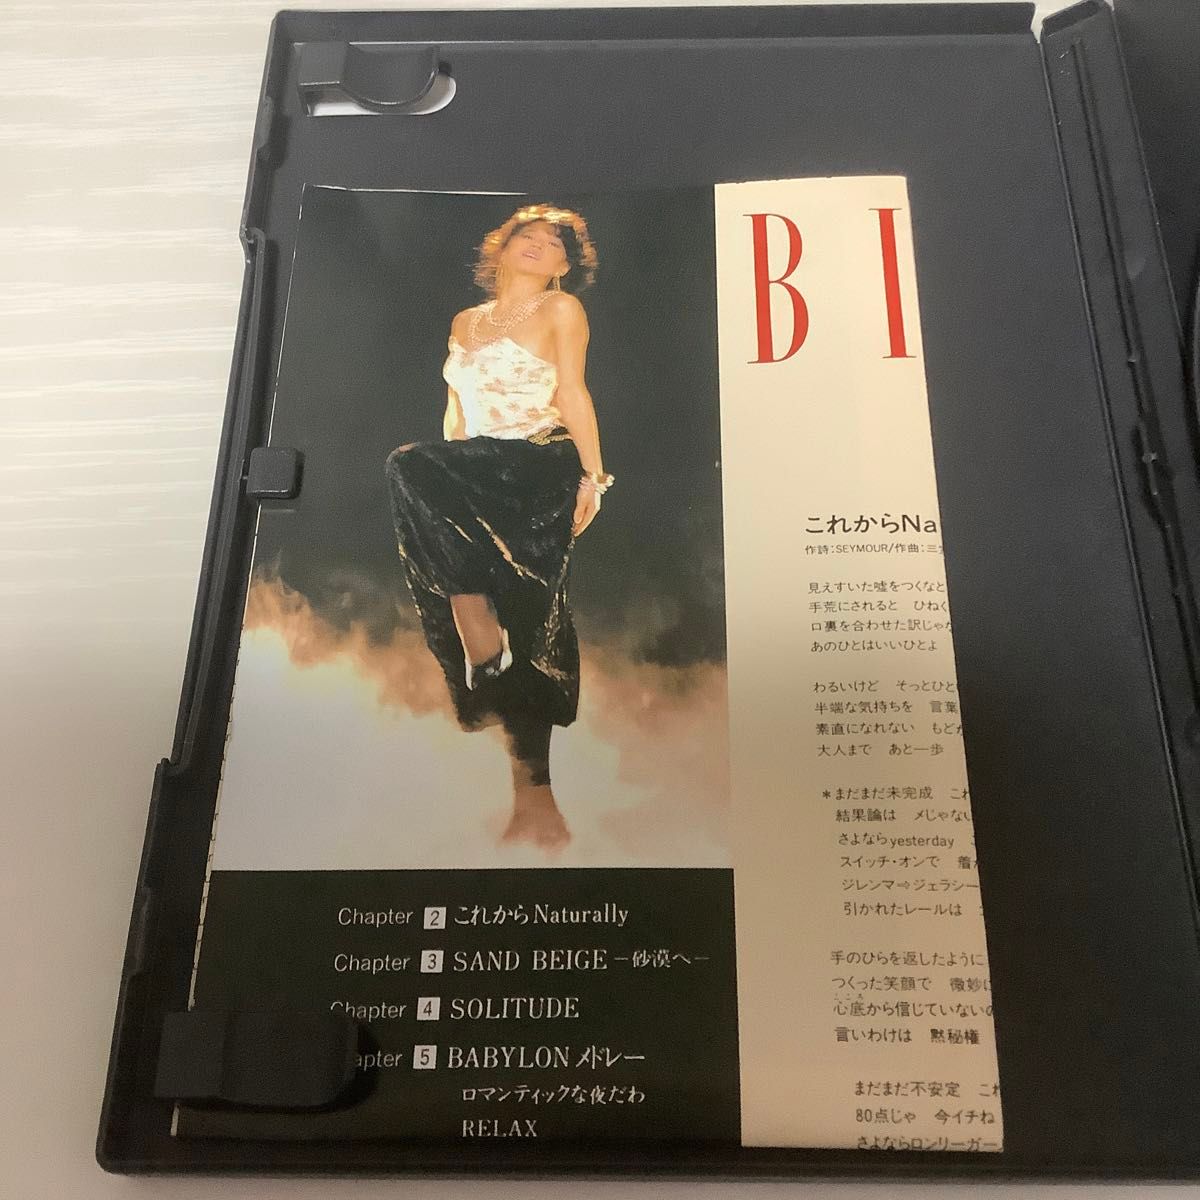 中森明菜 DVD BITTER&SWEET 5.1 オーディオリマスター